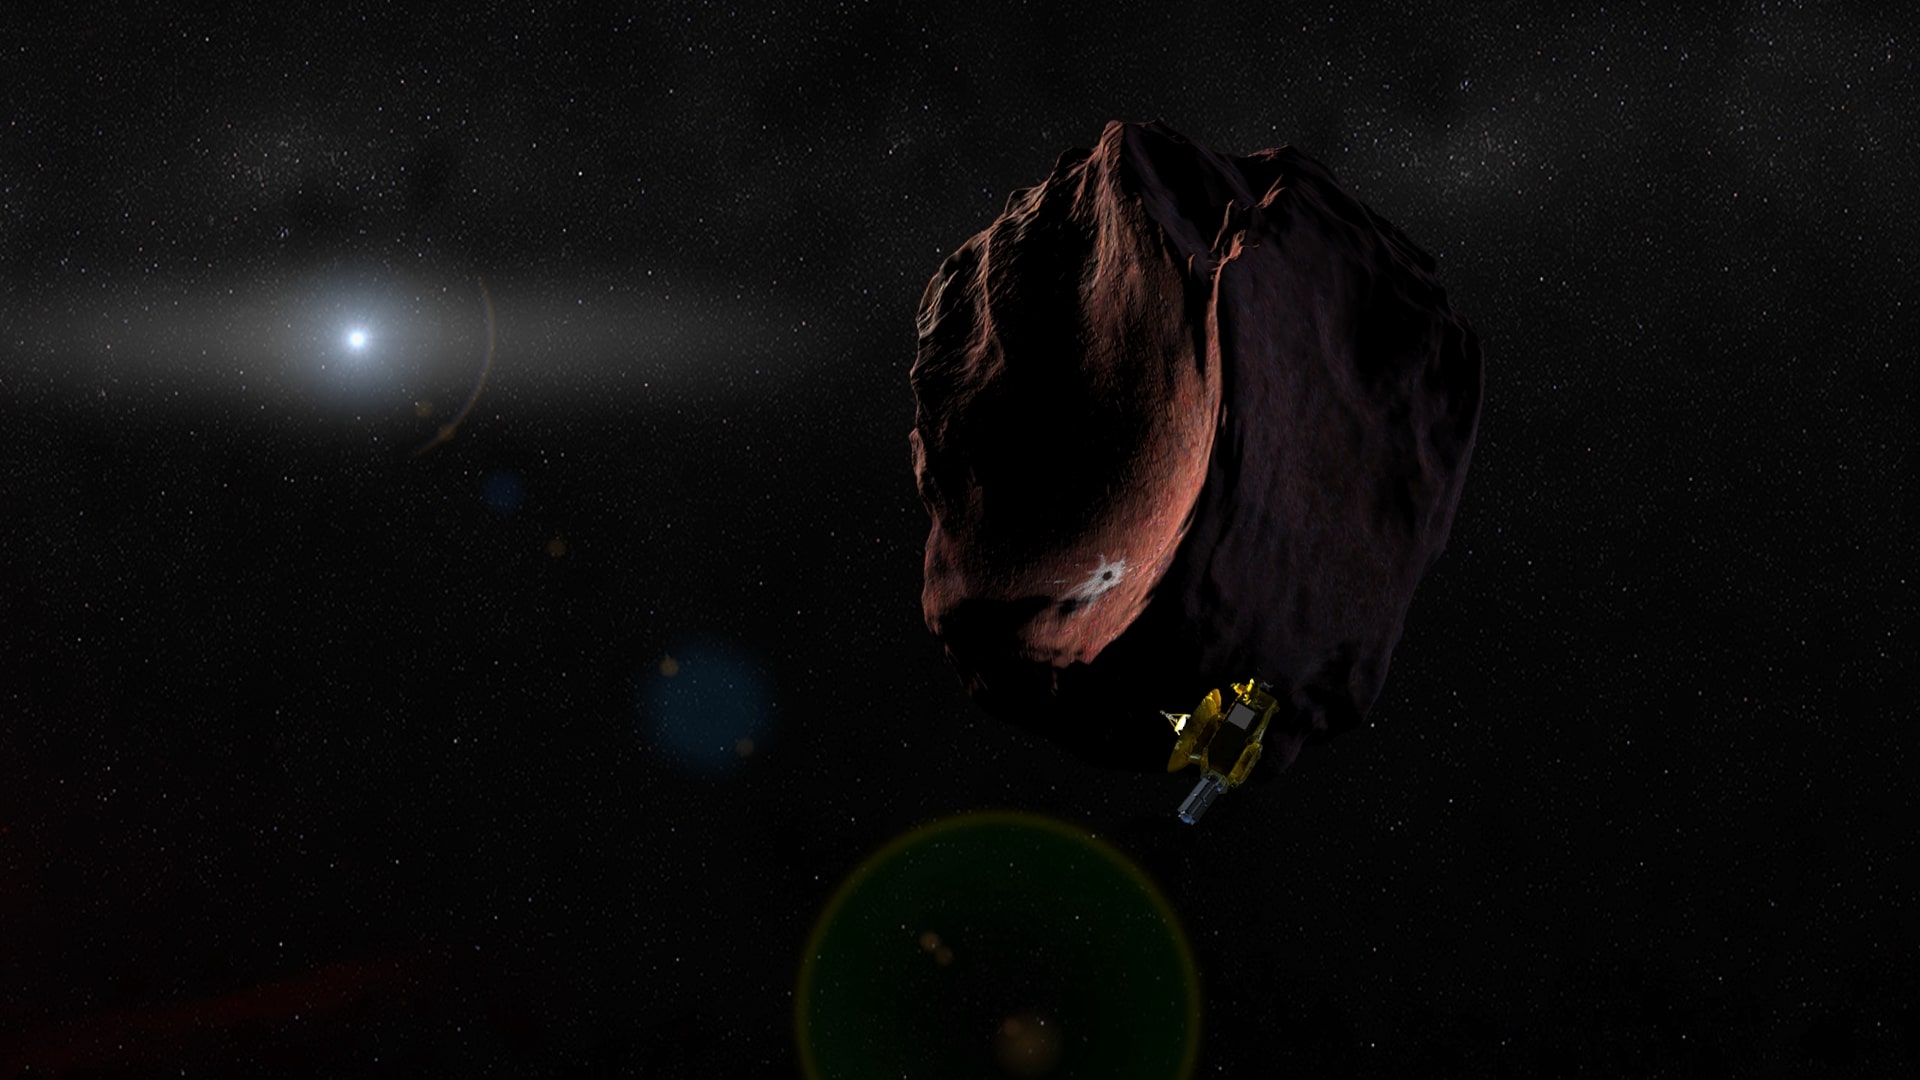 New Horizons - 2014 MU69